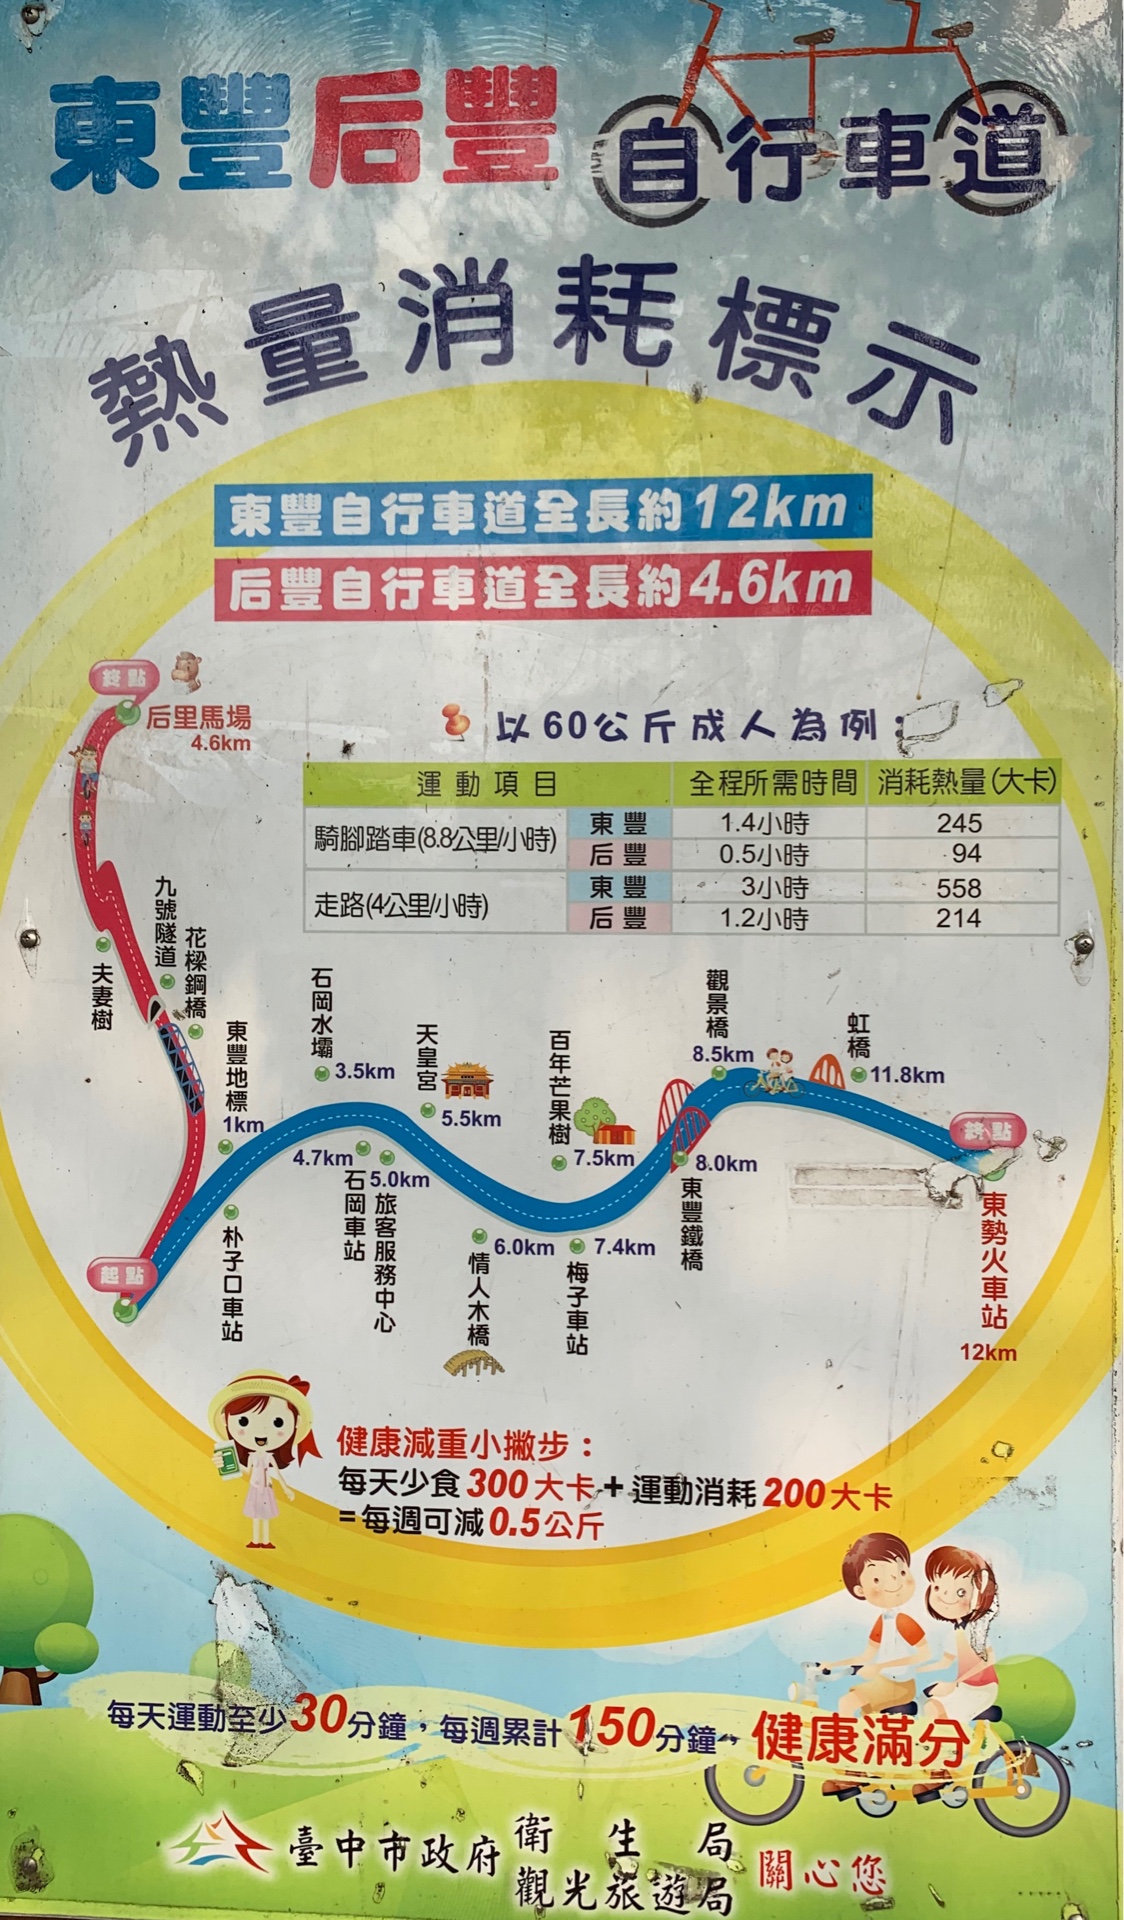 東豐自行車綠廊路線圖